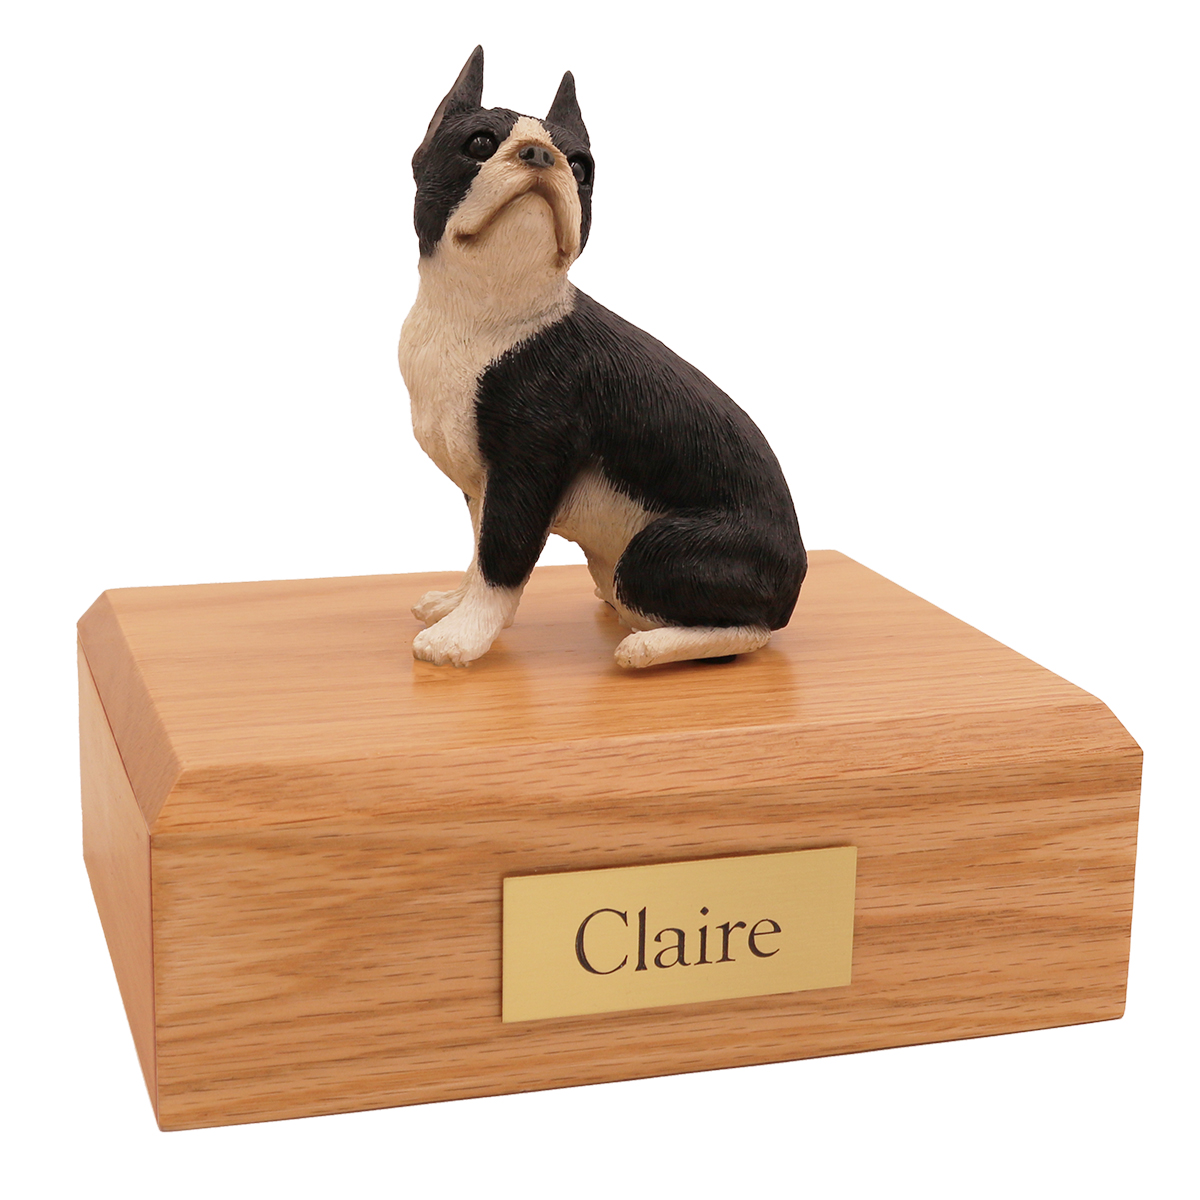 Dog, Boston Terrier - Figurine Urn